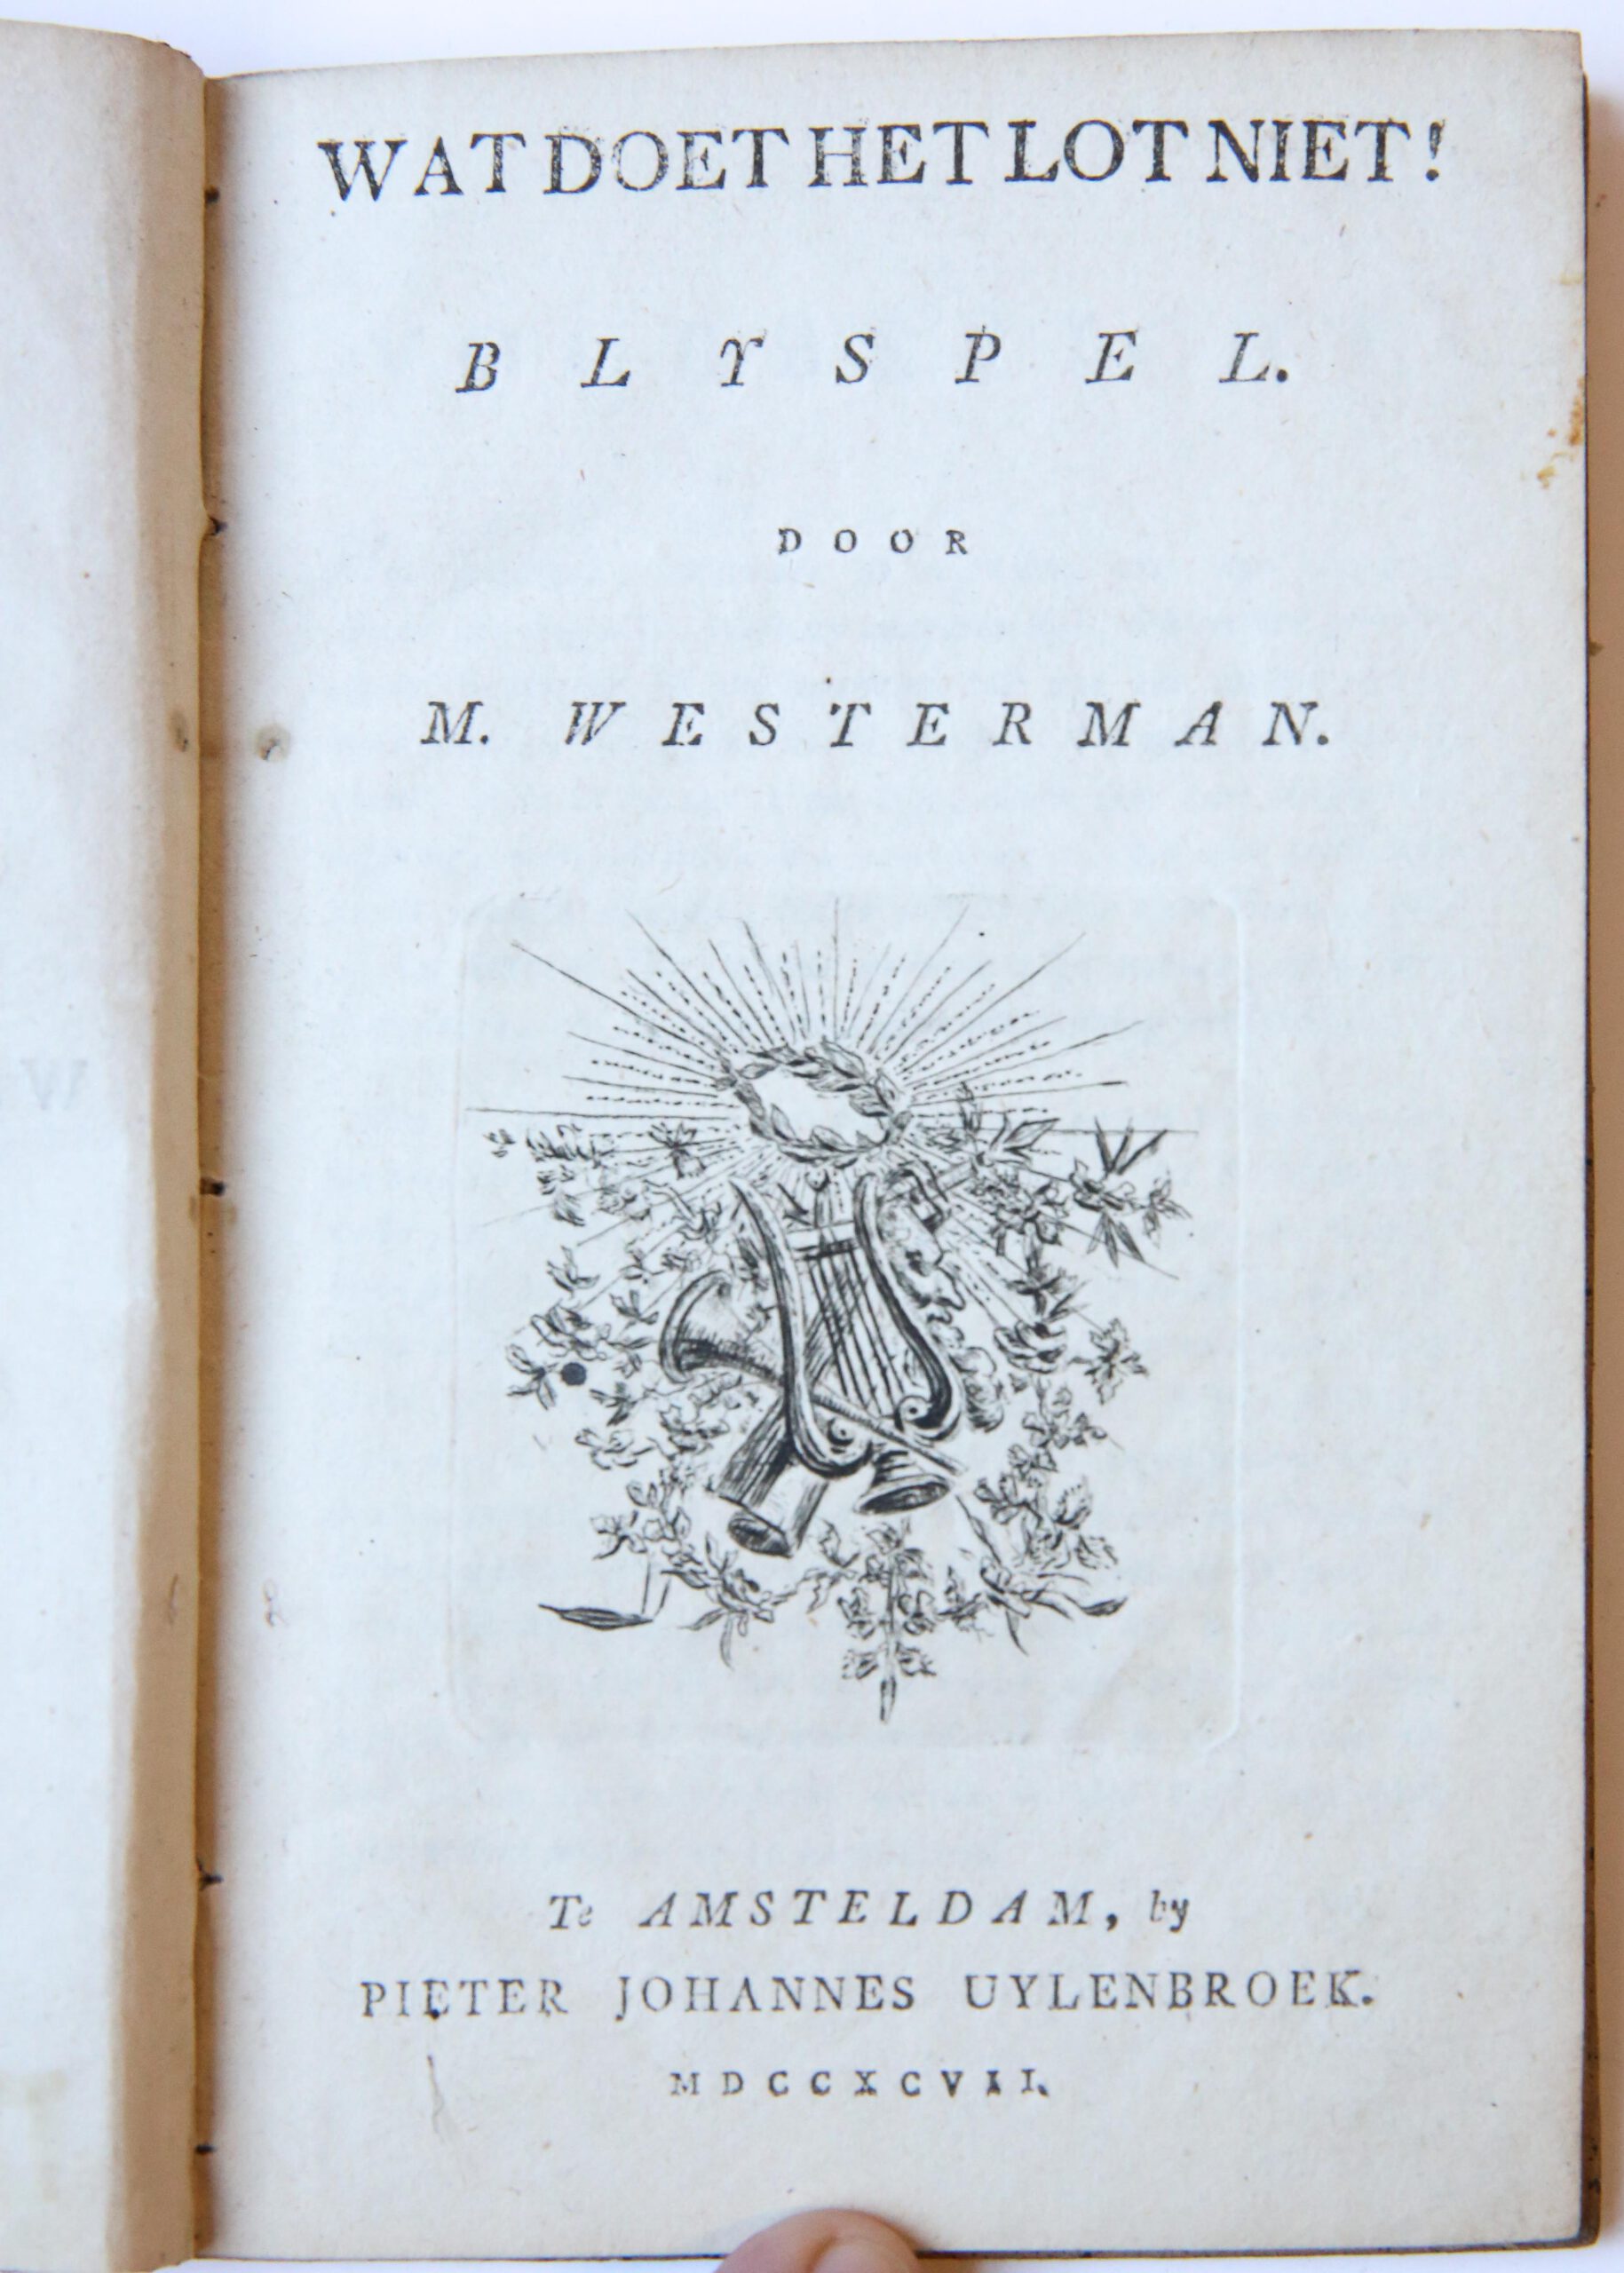 Wat doet het Lot niet! Blyspel door M. Westerman, Amsteldam Pieter Johannes Uylenbroek 1797, 56 pp.